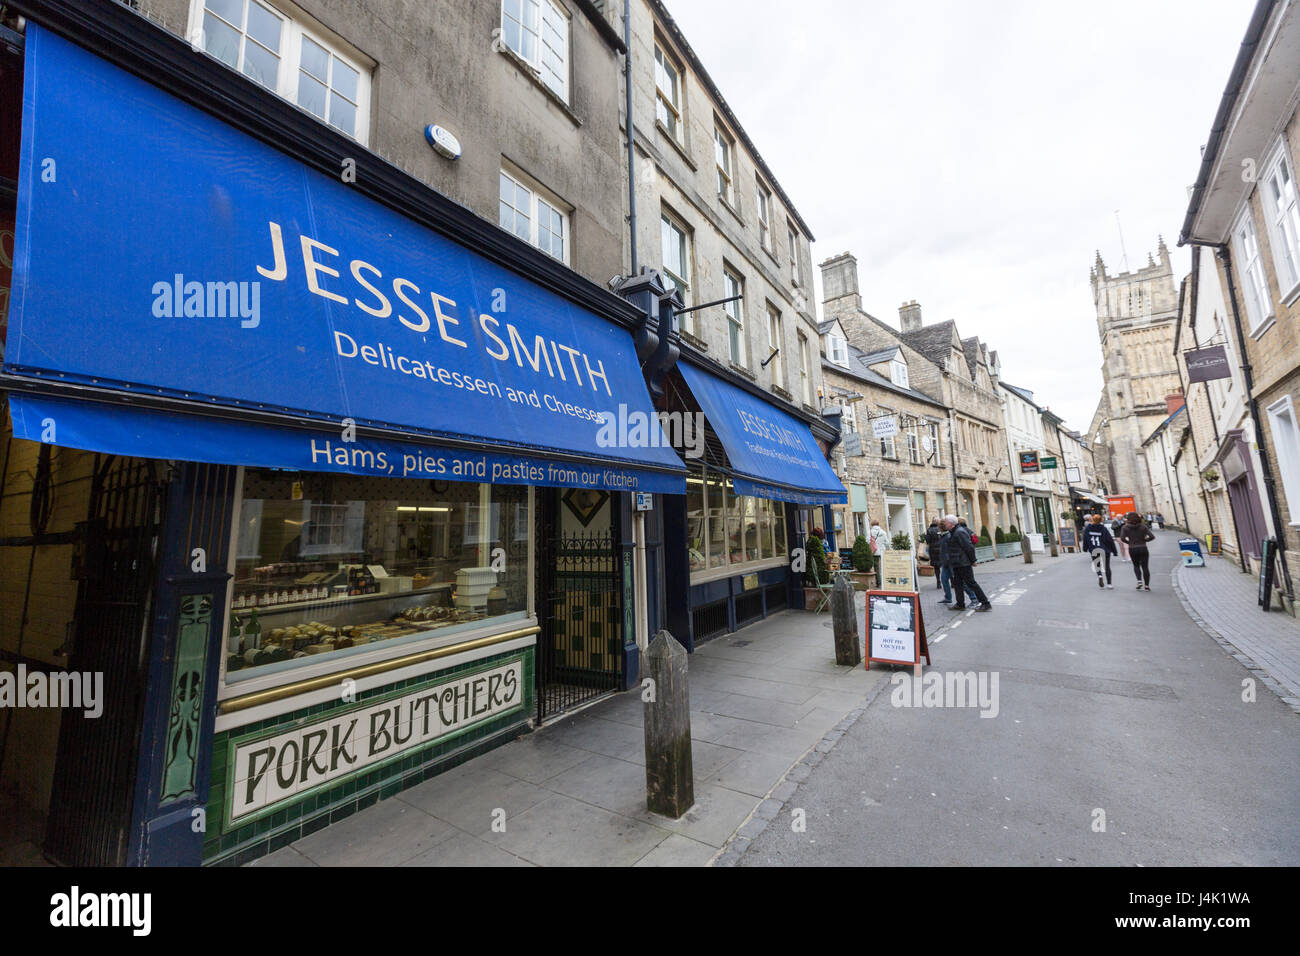 Jesse Smith, Black Jack, Rue des Bouchers de qualité et des magasins de vente de matériaux de la viande en gros dans les Cotswolds, Cirencester, Gloucestershire, Angleterre Banque D'Images